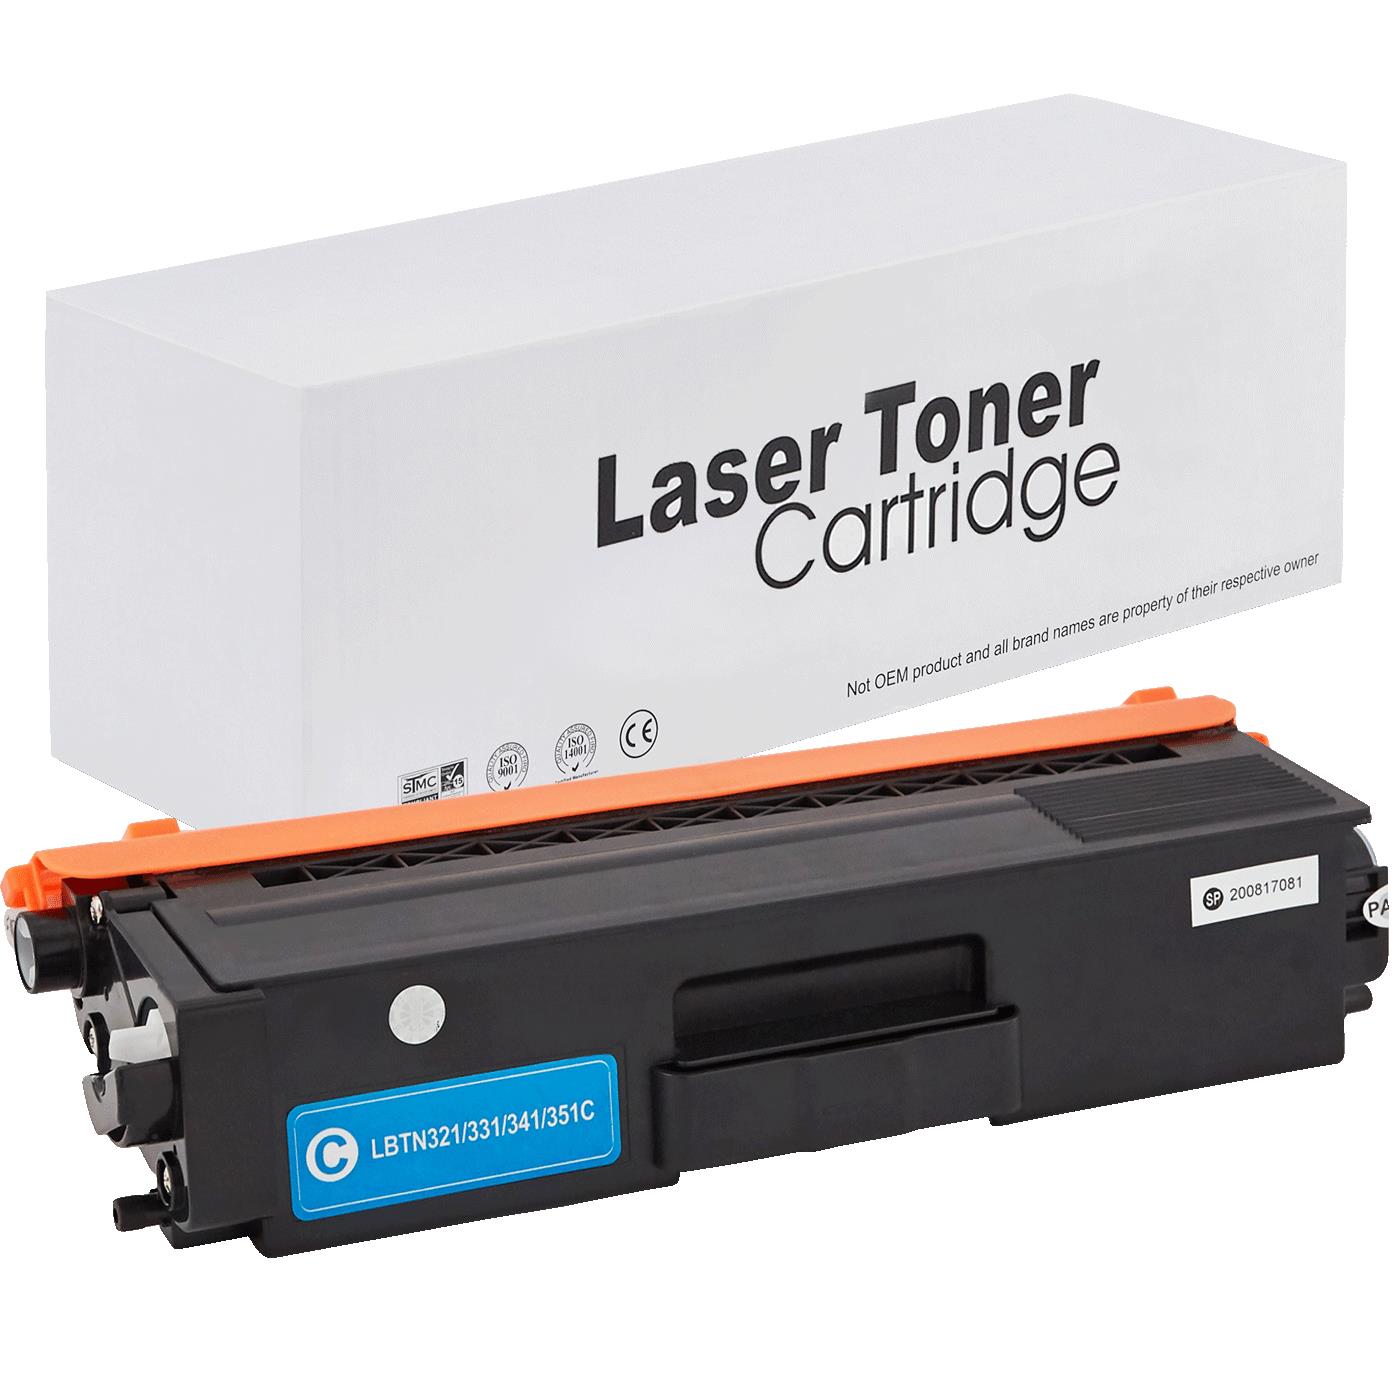 съвместима тонер касета за принтери и печатащи устройства на Brother HL-L 8350 CDW Toner BR-321C | TN321C. Ниски цени, прецизно изпълнение, високо качество.